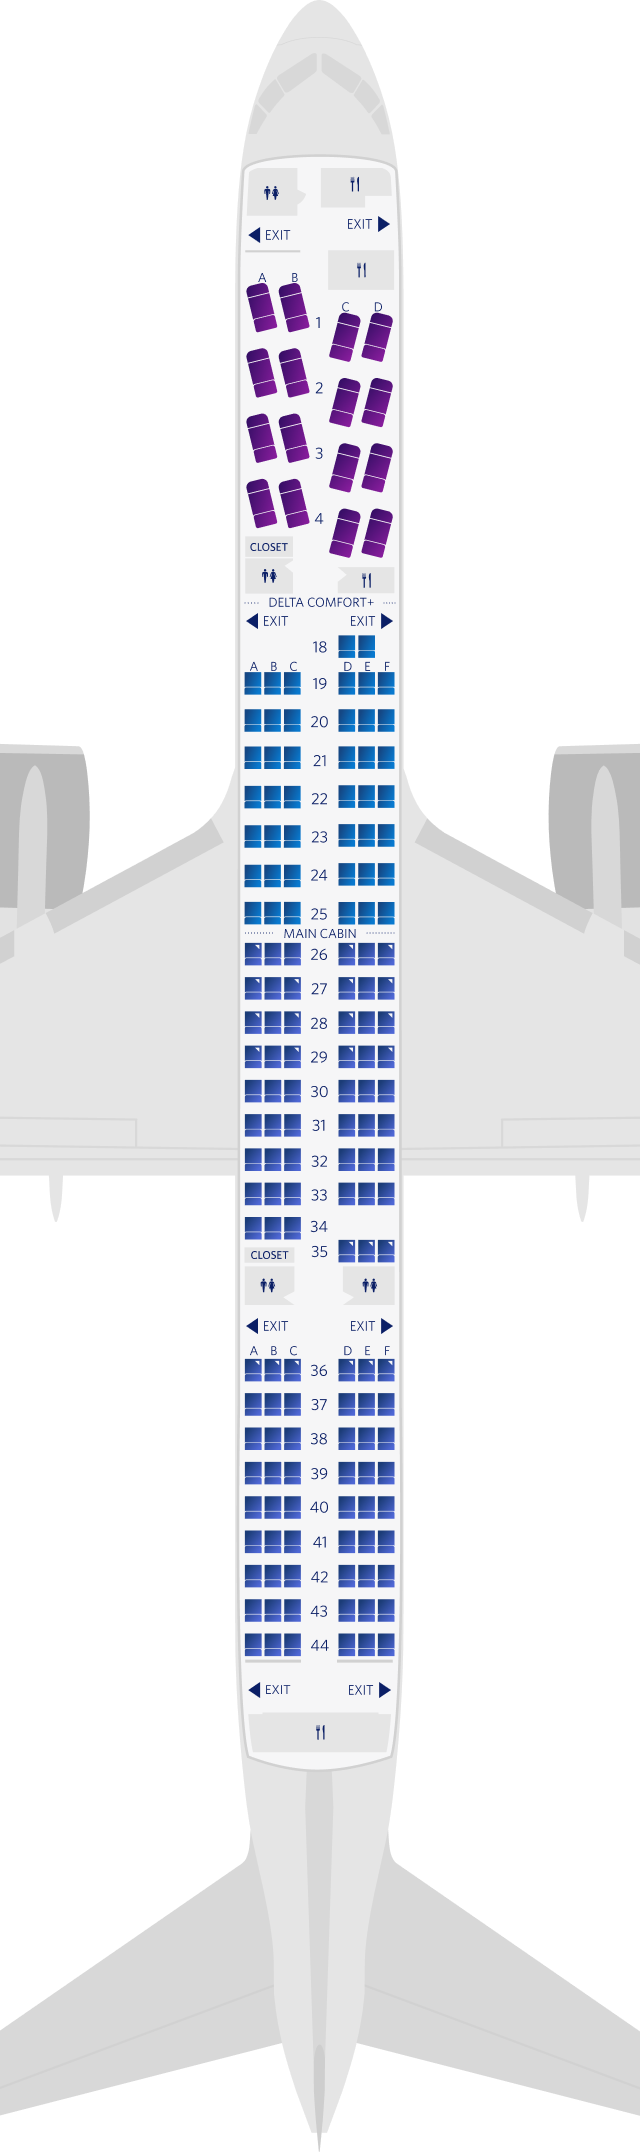 波音757-200-75S座位图